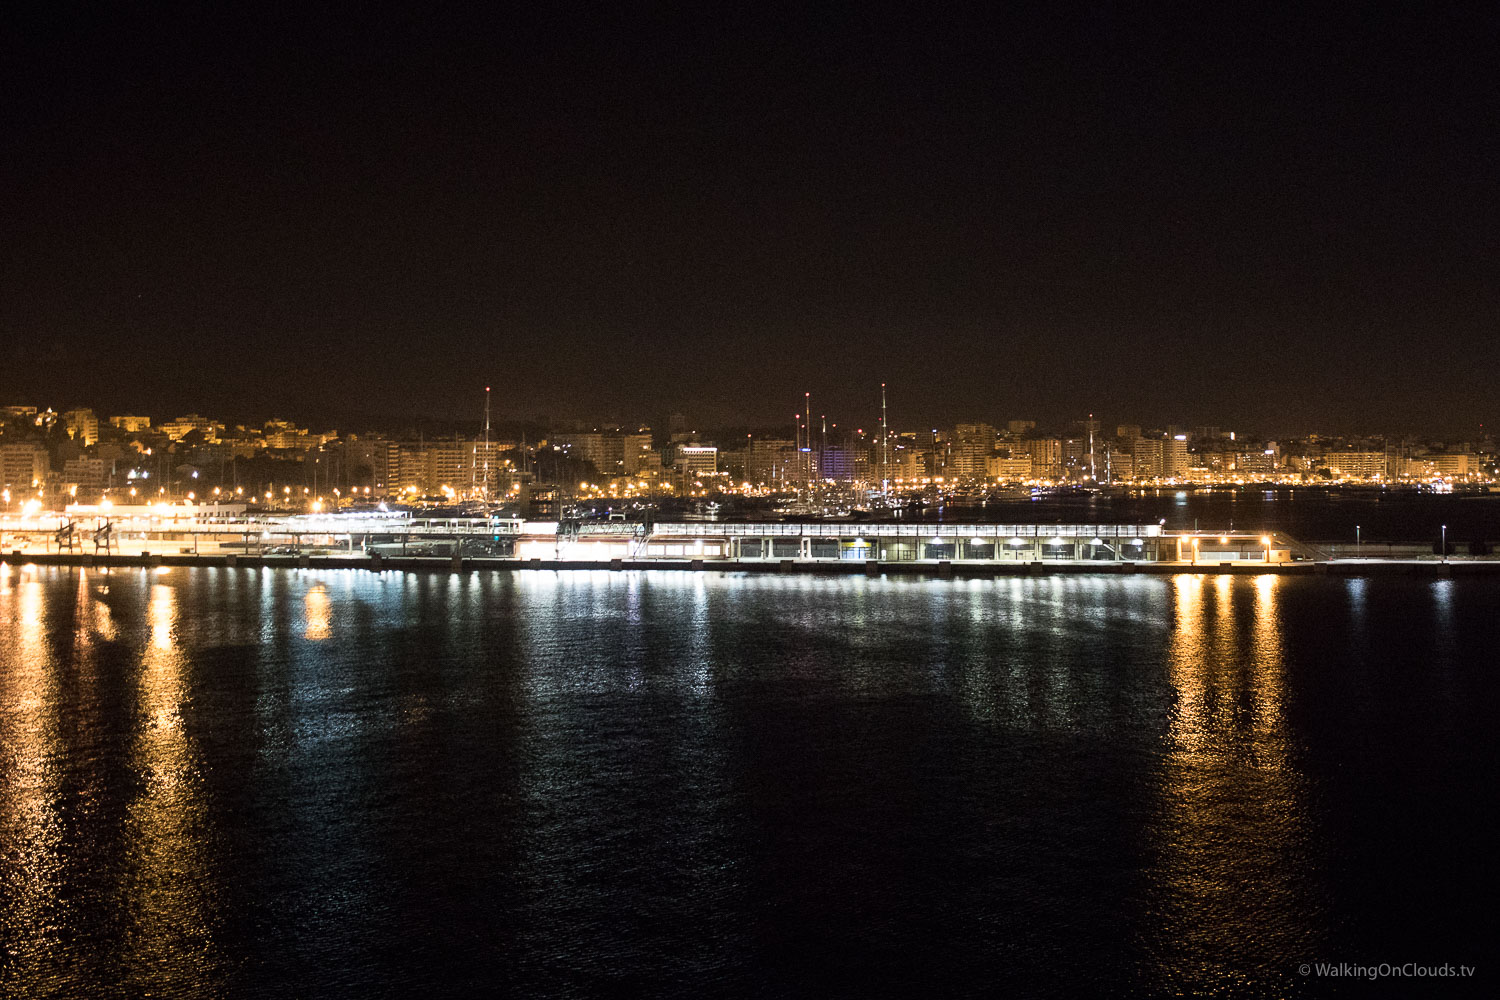 Kreufahrtblogger - Ausschiffen Palma de Mallorca - Rueckflug nach Deutschland - Erlebnisse auf einer Kreuzfahrt mit TUI Cruises mein Schiff - Cruise-Blogger und Best-Ager-Reiseblogger